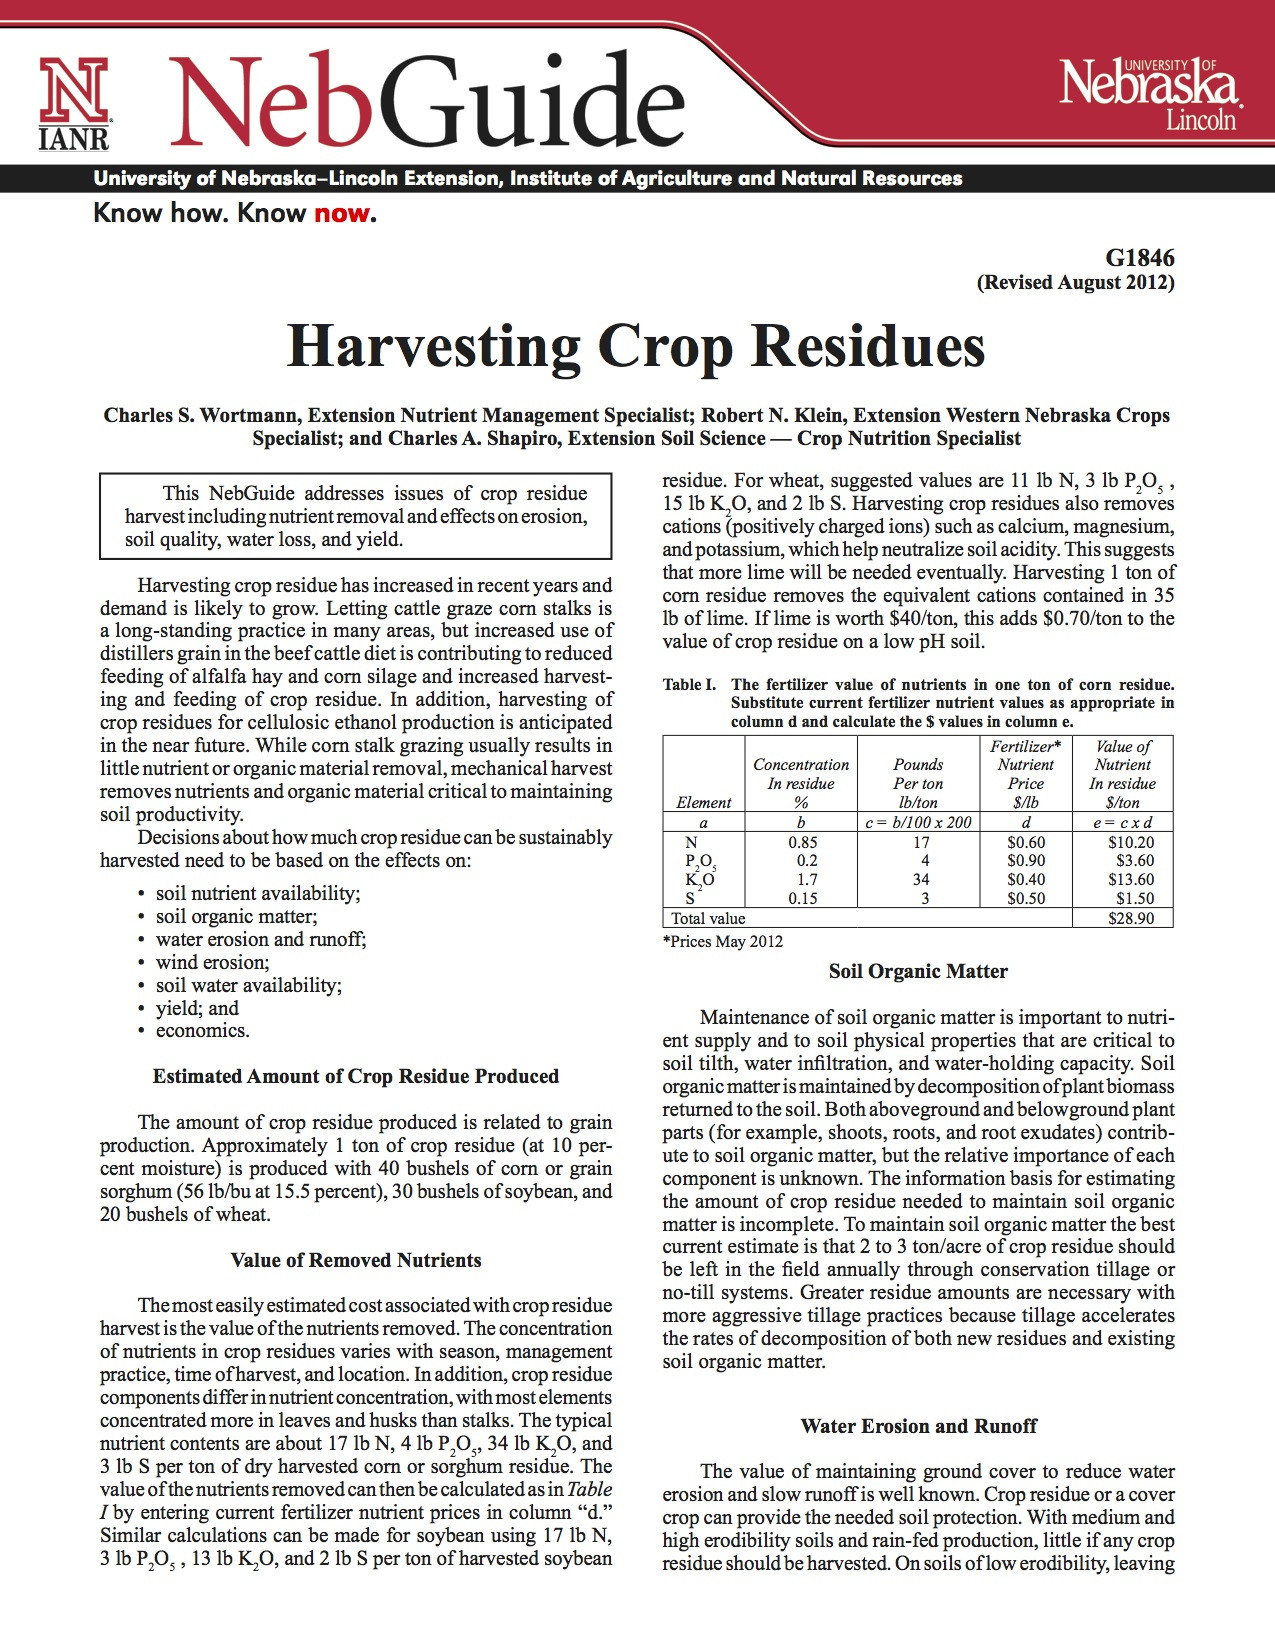 Harvesting Crop Residues